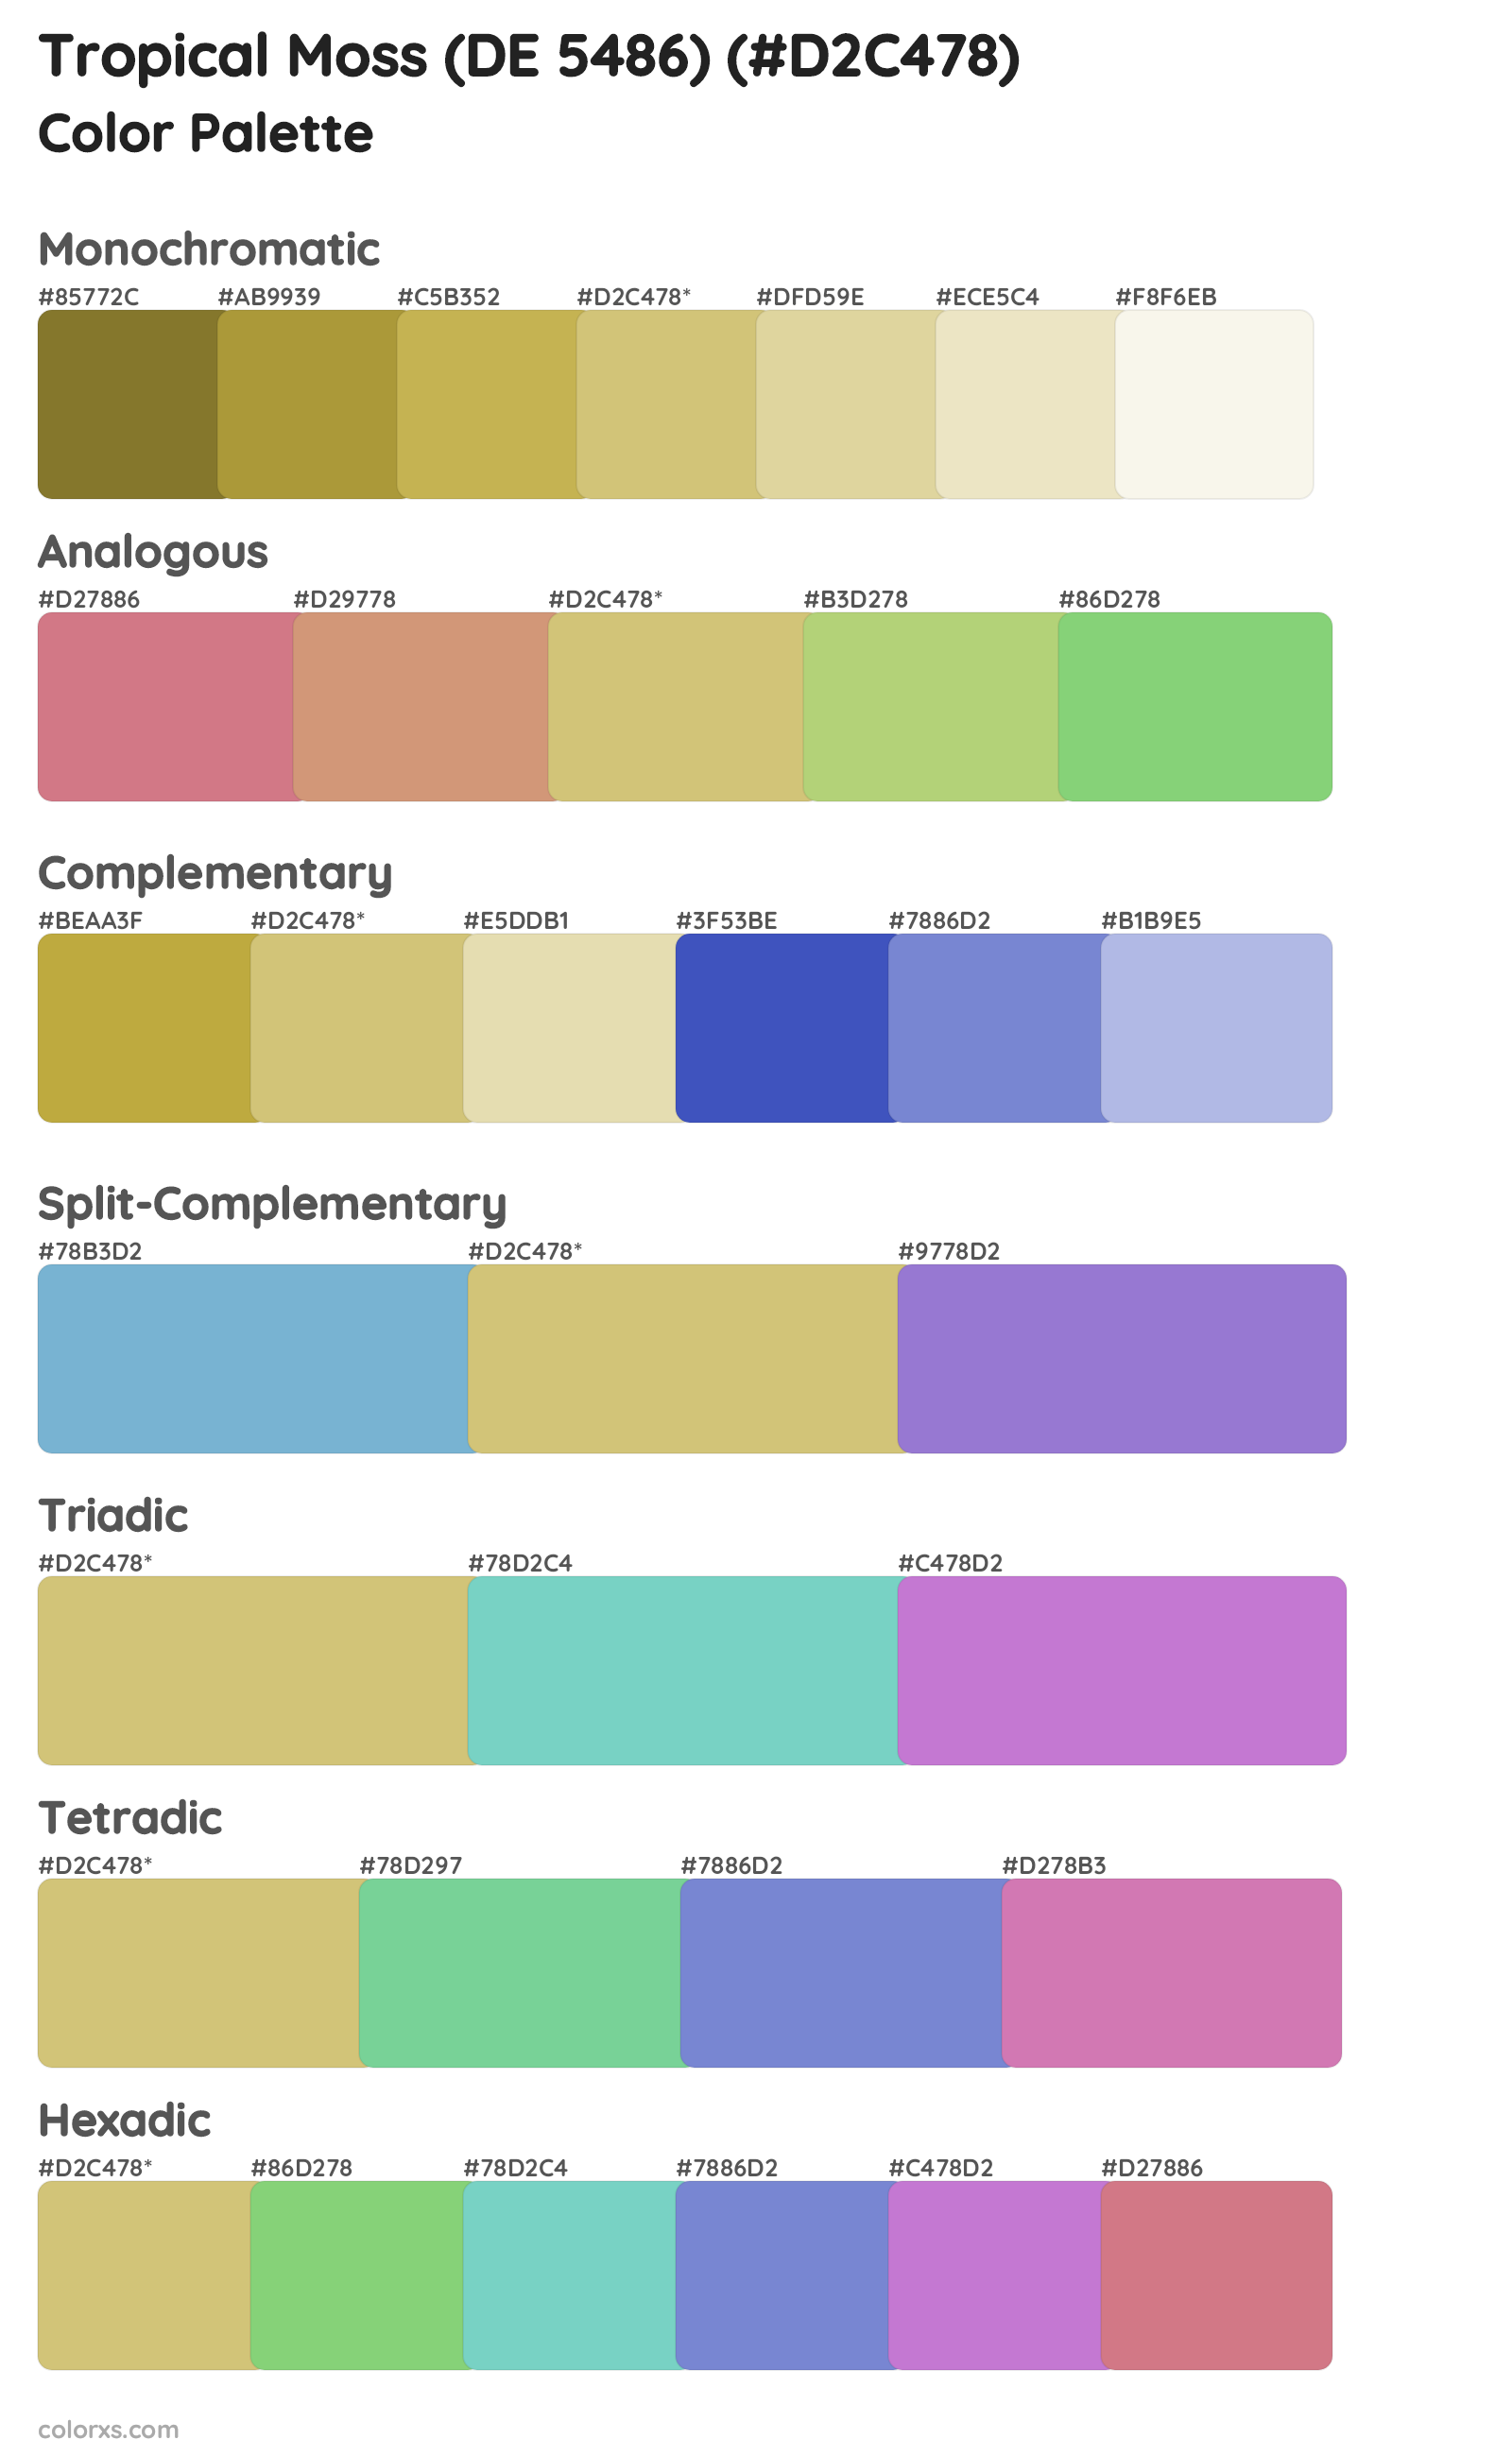 Tropical Moss (DE 5486) Color Scheme Palettes